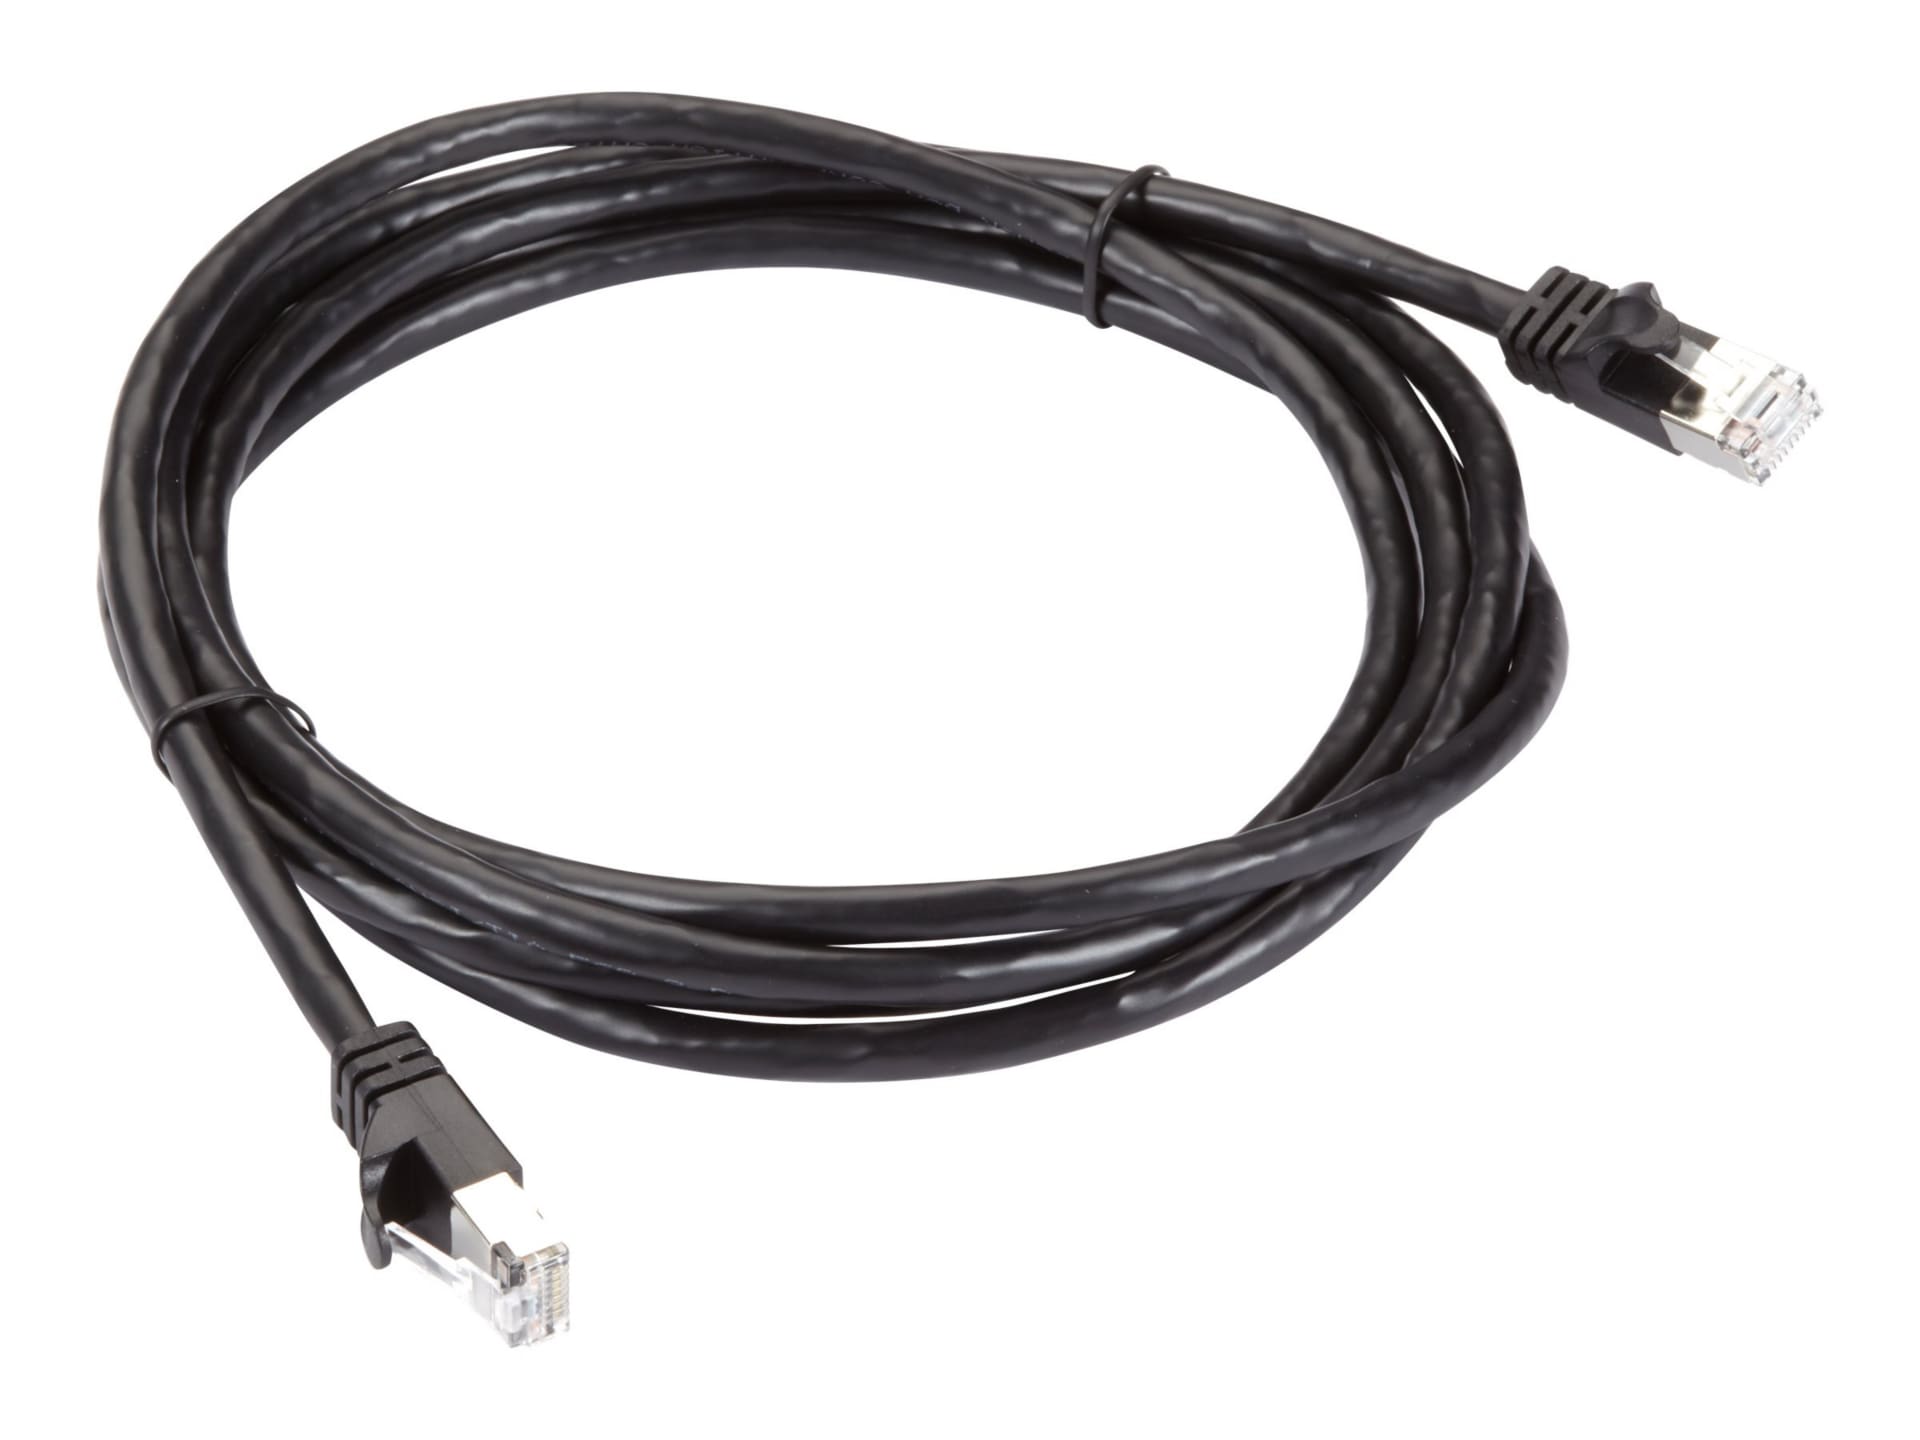 Black Box GigaTrue patch cable - 10 ft - black